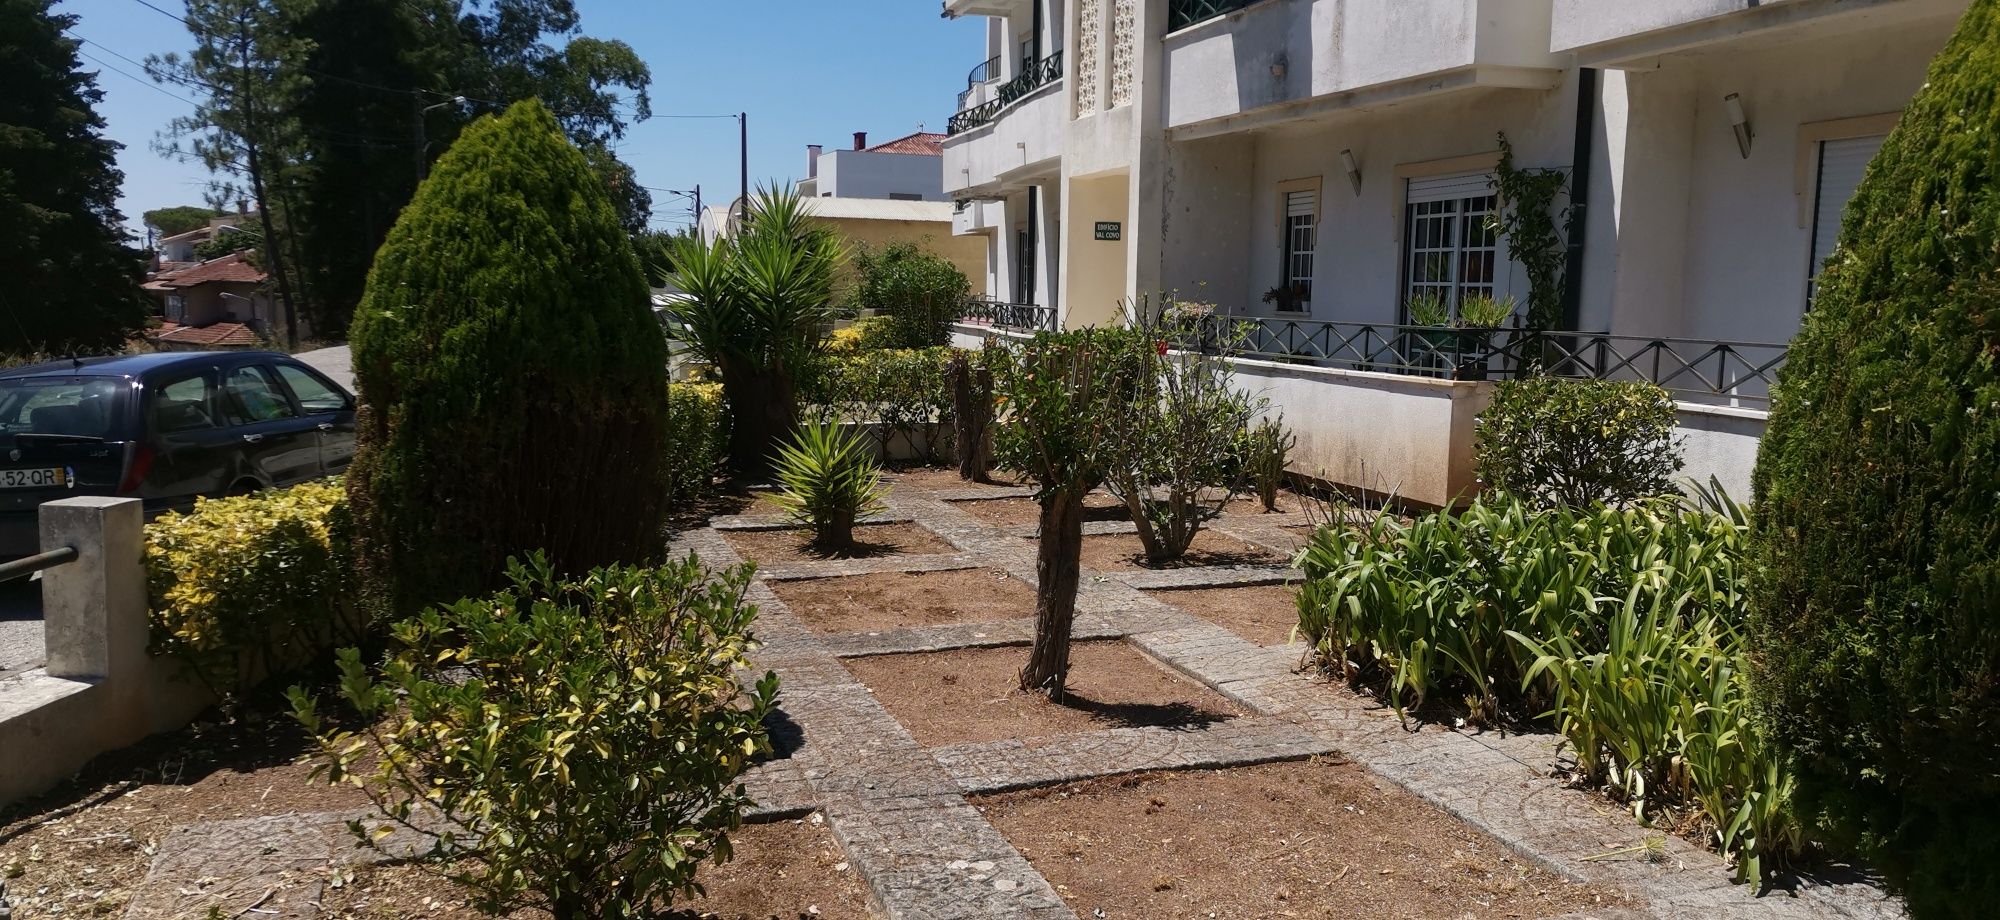 Jardinagem Coimbra